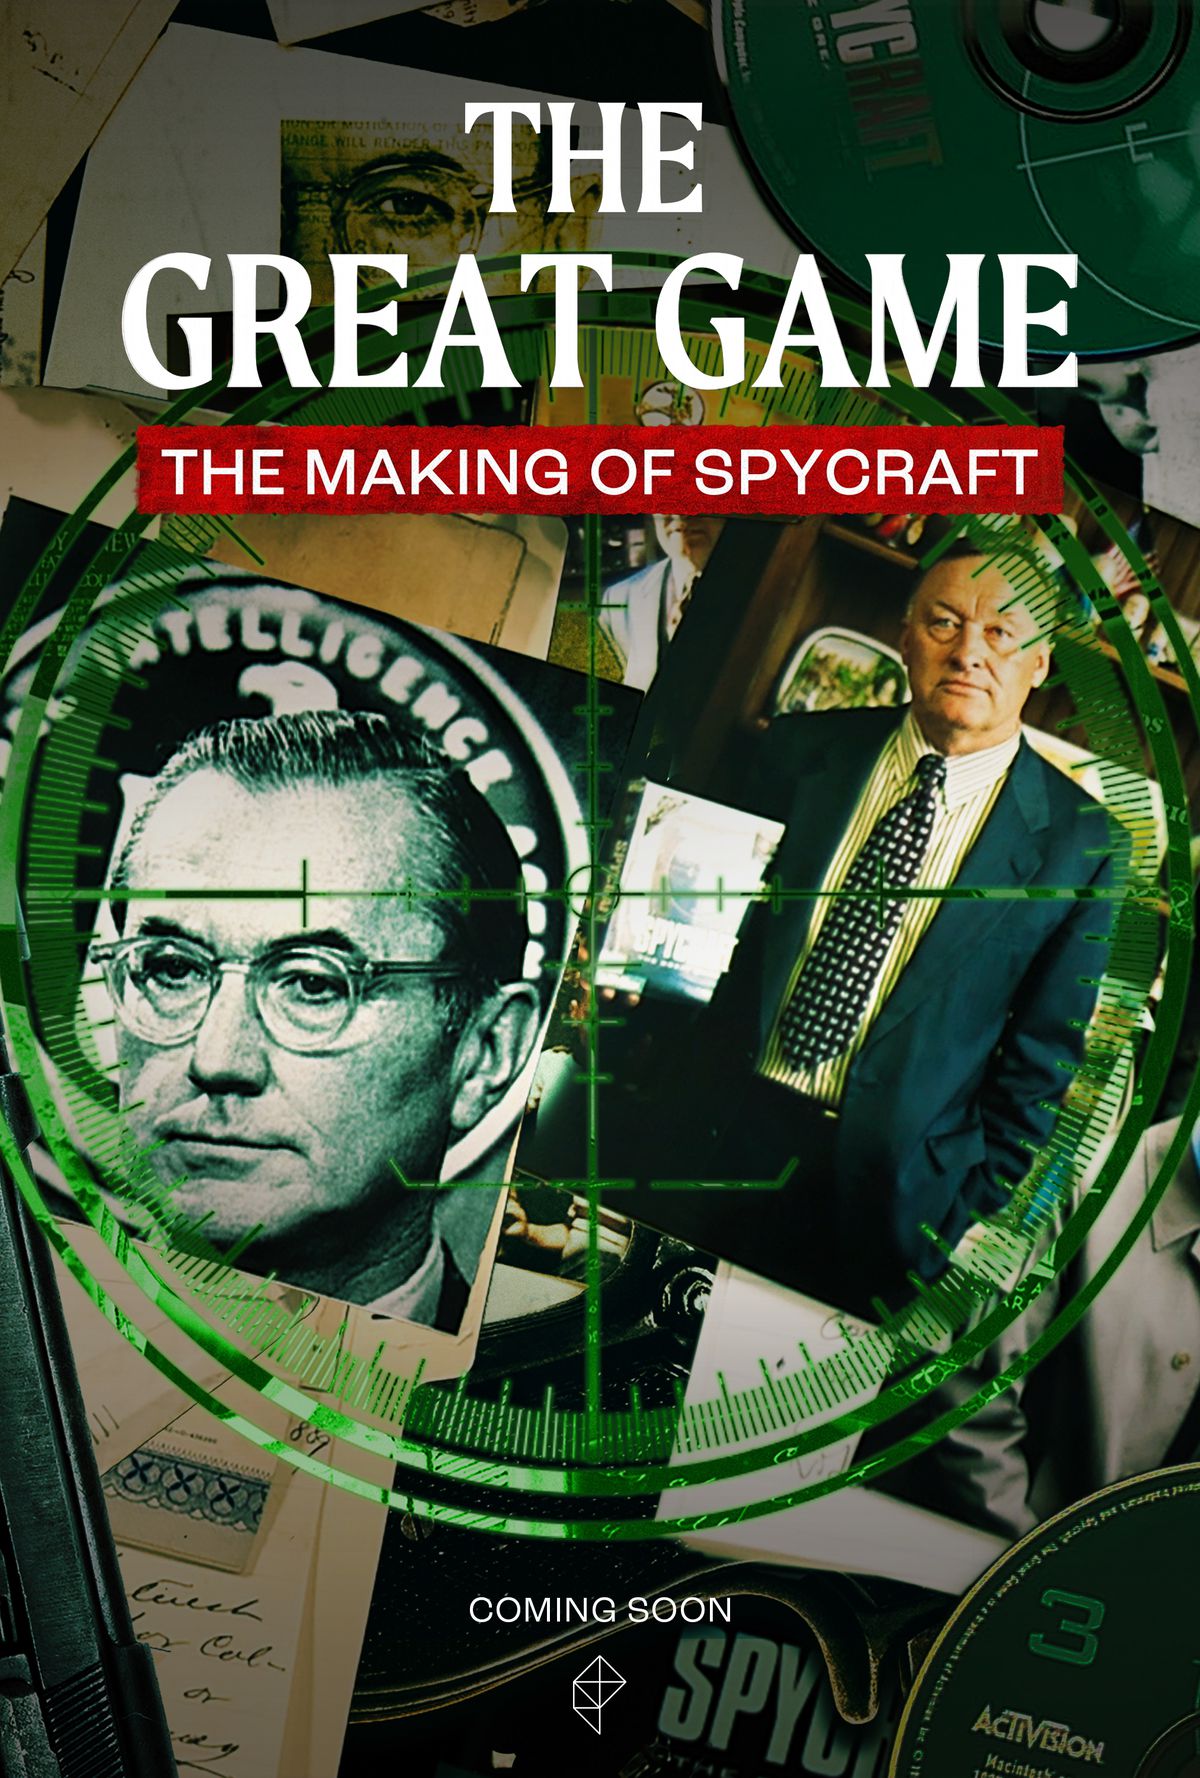 Un poster per The Great Game: The Making of Spycraft.  Molte foto, documenti ed efermera posati su un tavolo nero, con sopra un grande bersaglio verde.